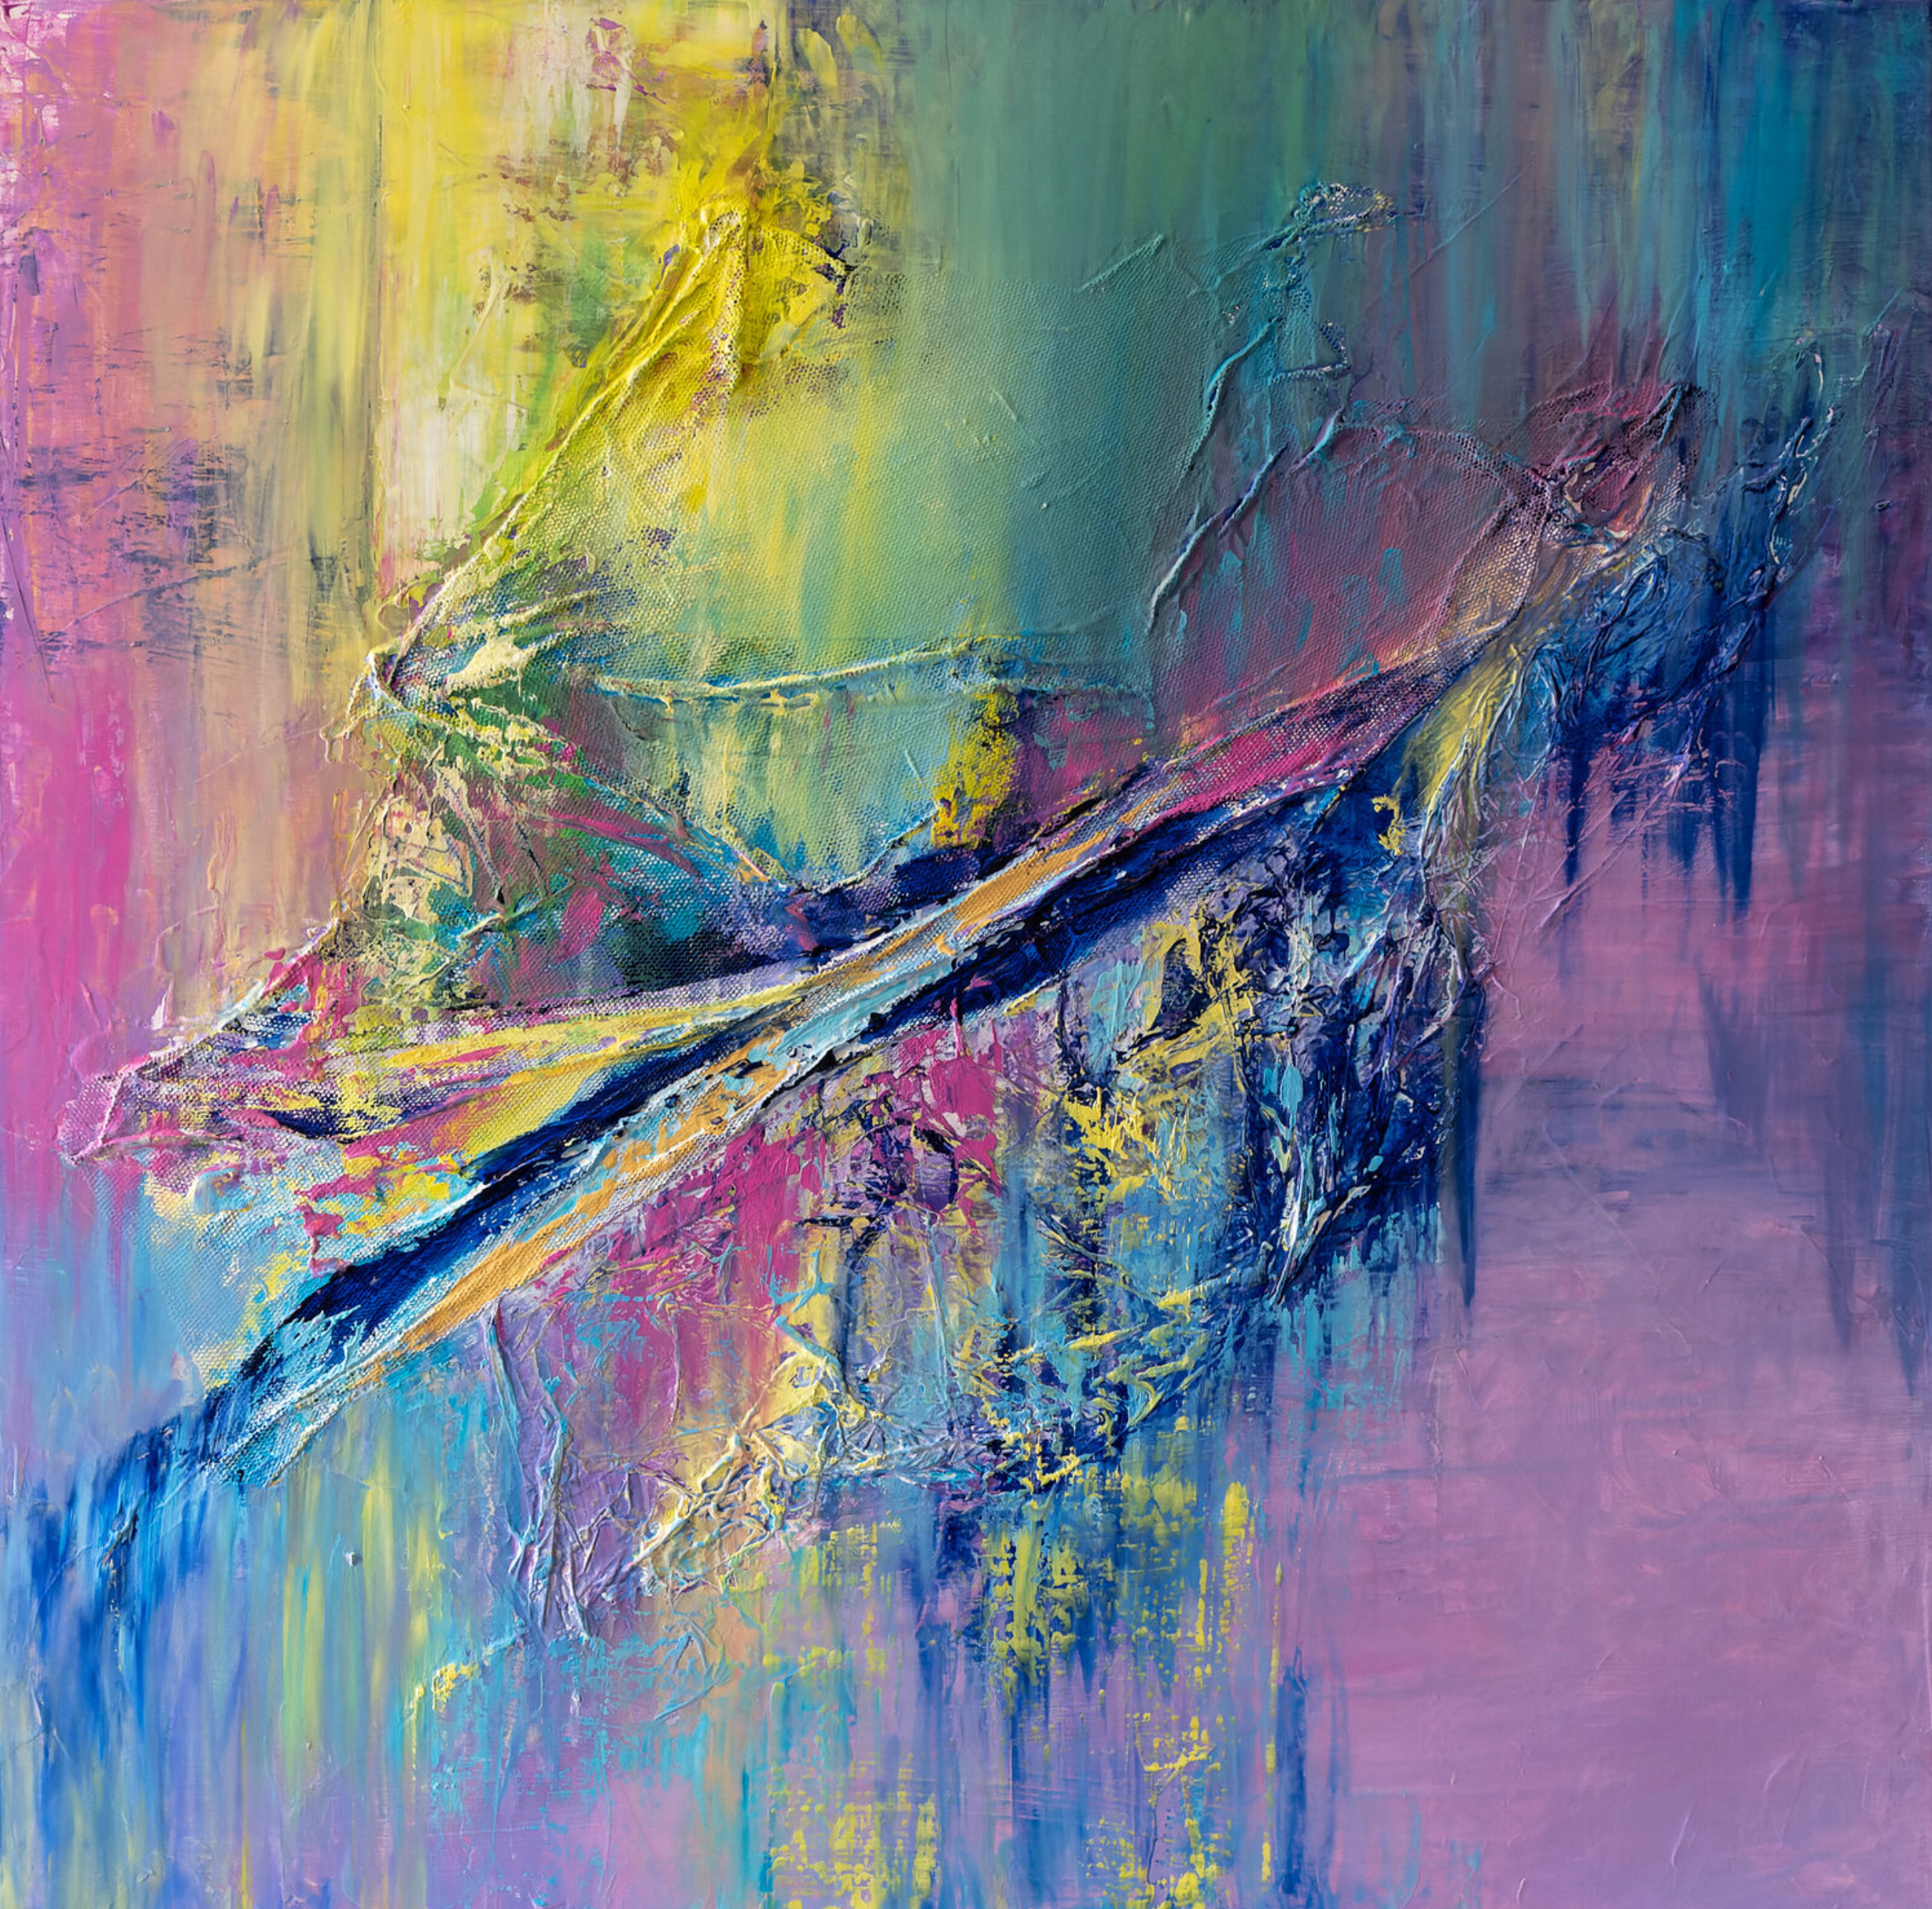 La peinture abstraite "Apesanteur" de Françoise Dugourd-Caput présente une abstraction lyrique aux couleurs chaudes et douces, articulée autour d'une diagonale de matière en apesanteur, d'où le titre.